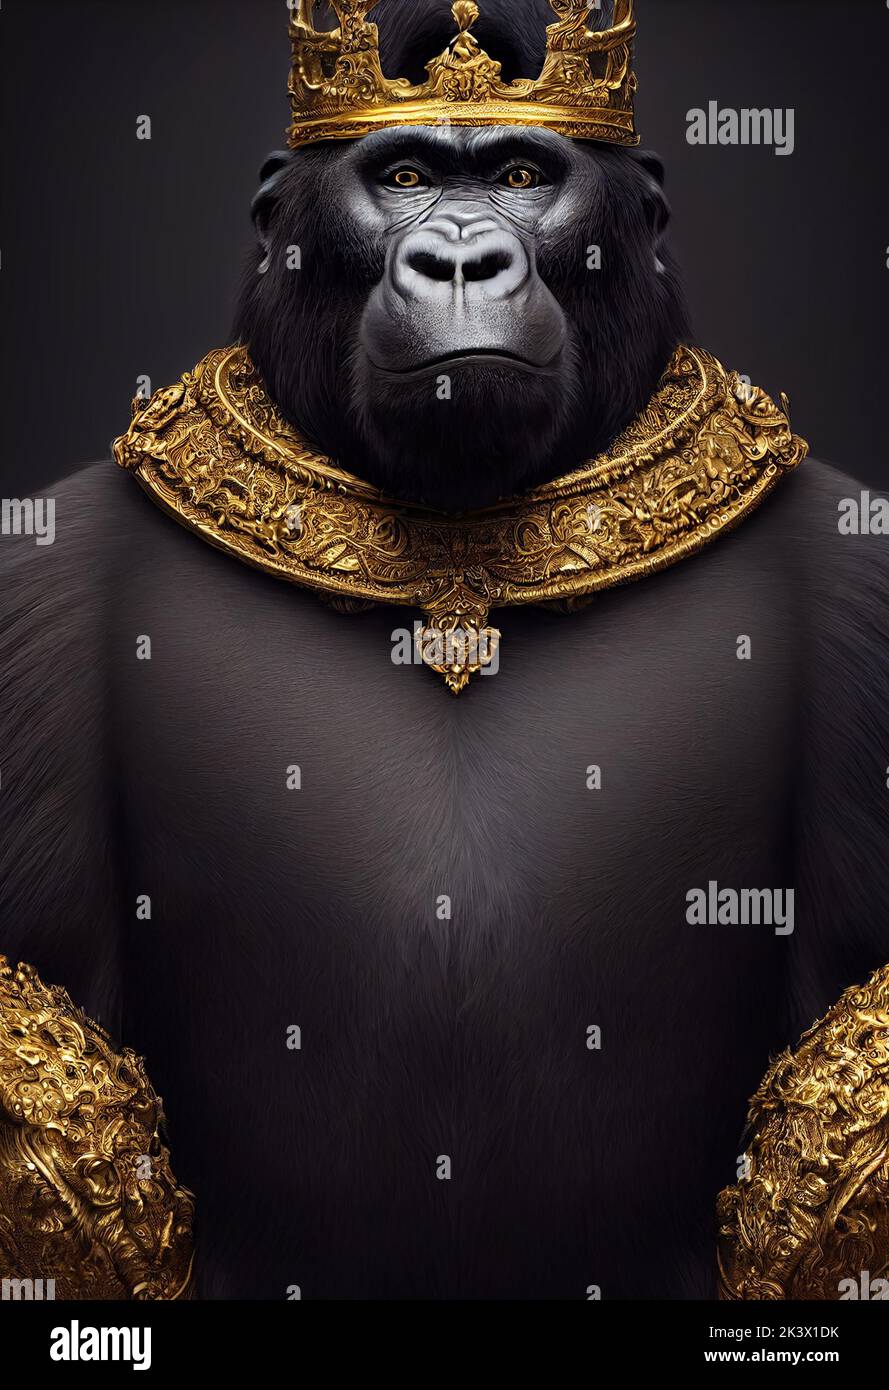 Dessin d'un roi de gorille Banque D'Images